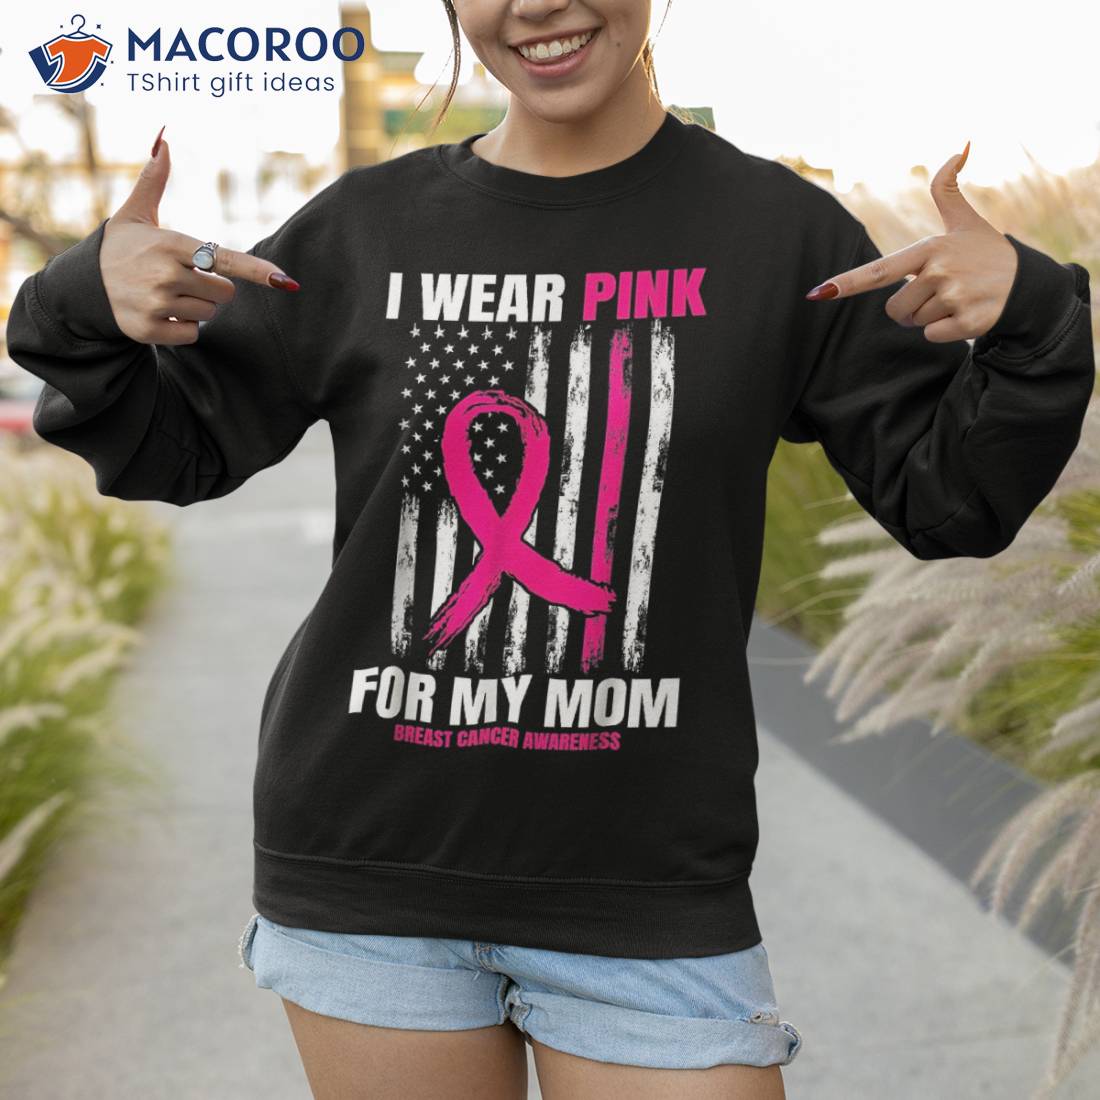 Breast Cancer Awareness Shirt Ideas